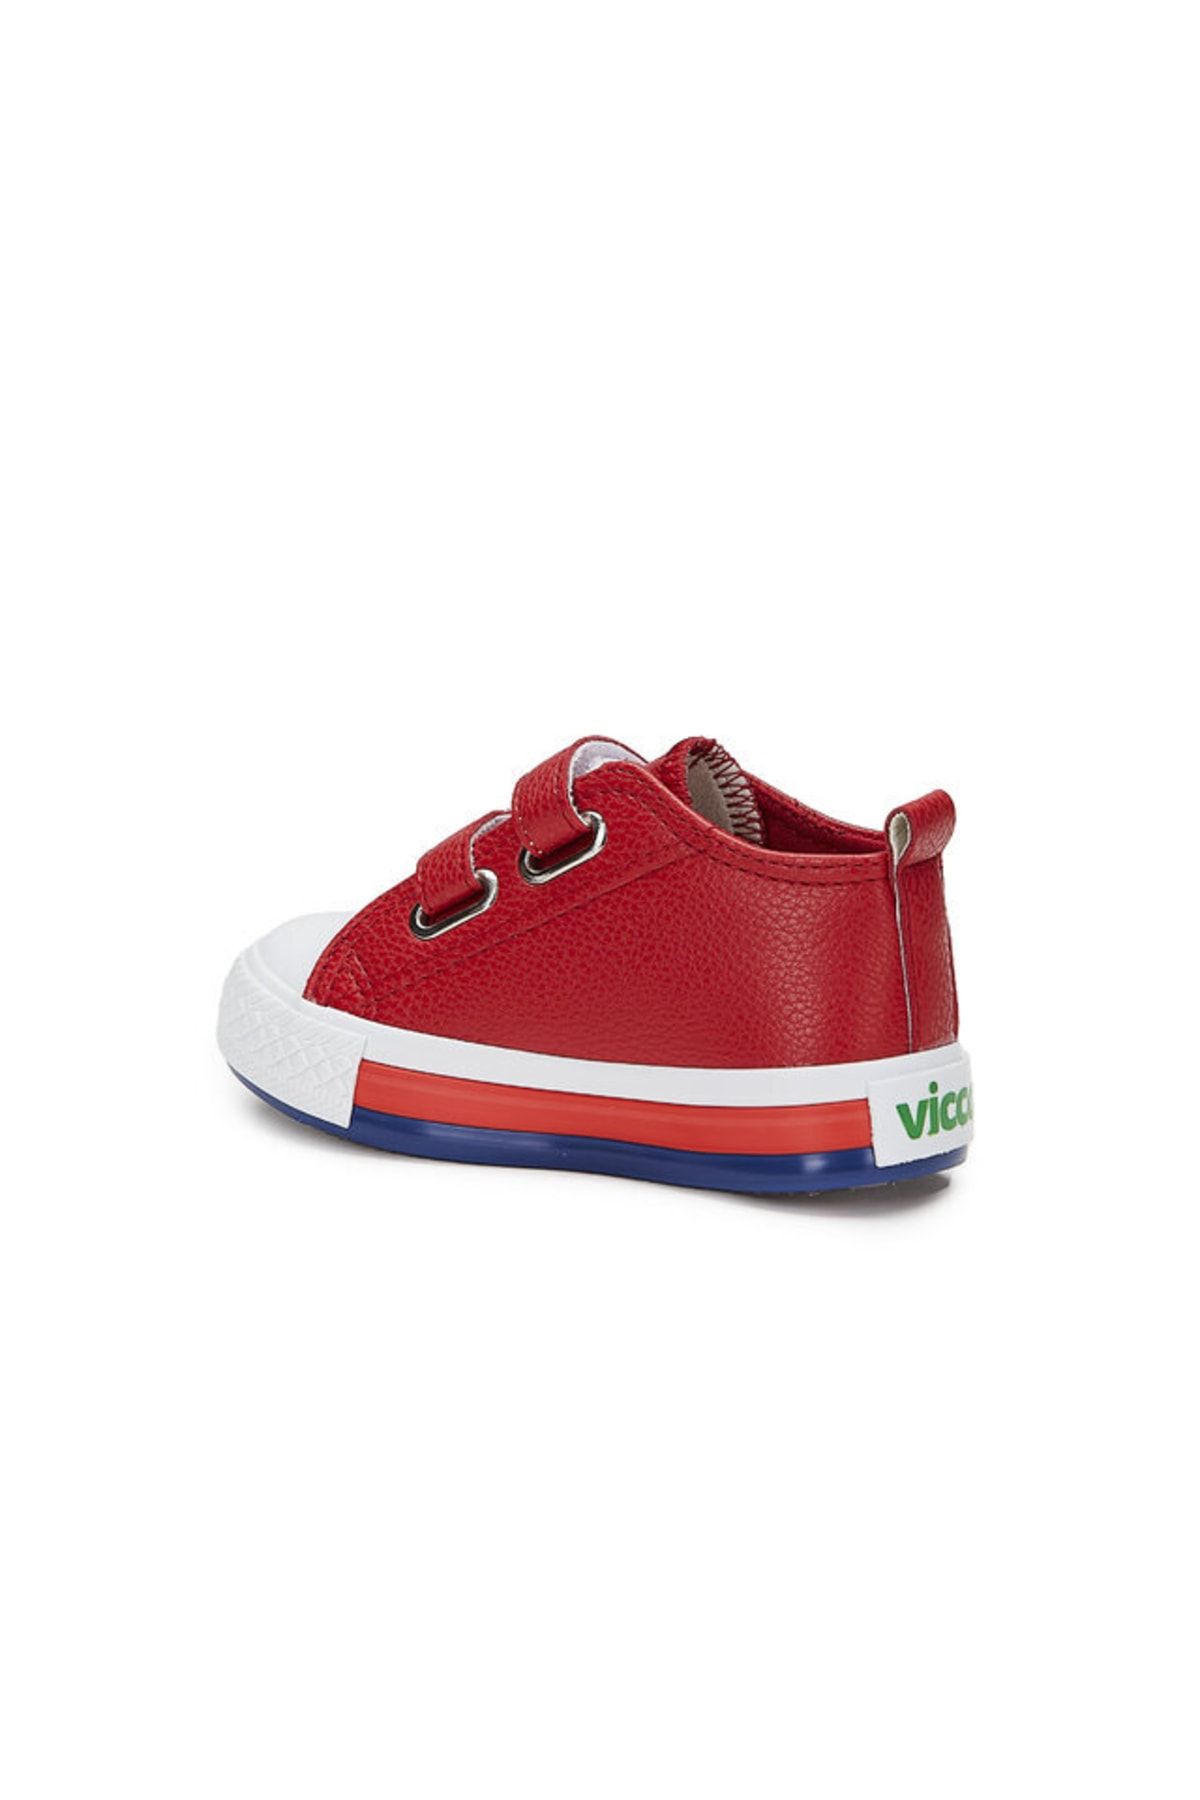 Vicco 925,p22k,213 Armin Çocuk Spor Ayakkabı Byz,pembe Kırmızı